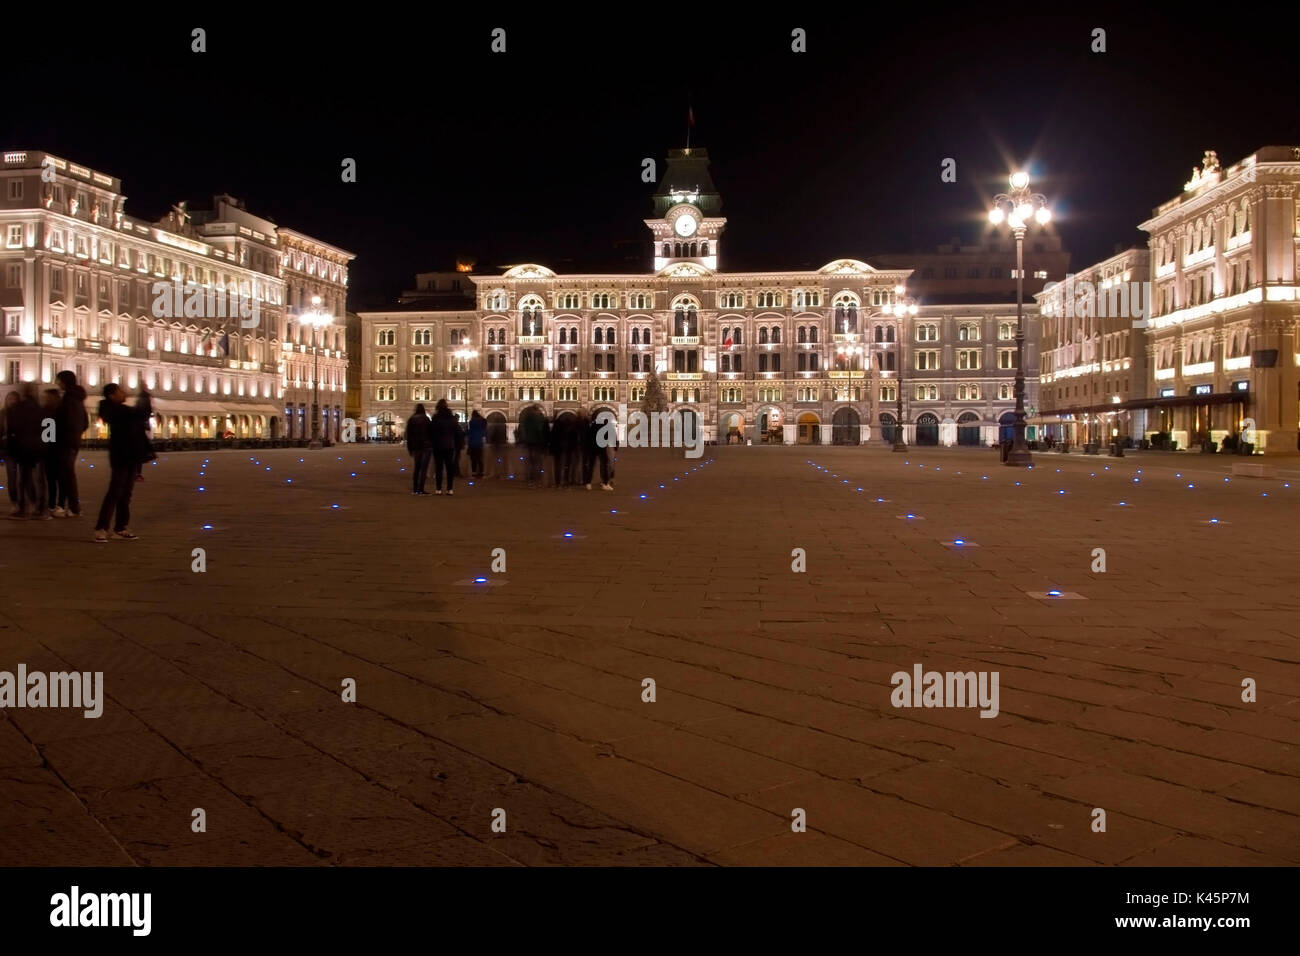 Europe, Italy, Friuli Venezia Giulia, Trieste district. Unità d'Italia square by night. Stock Photo